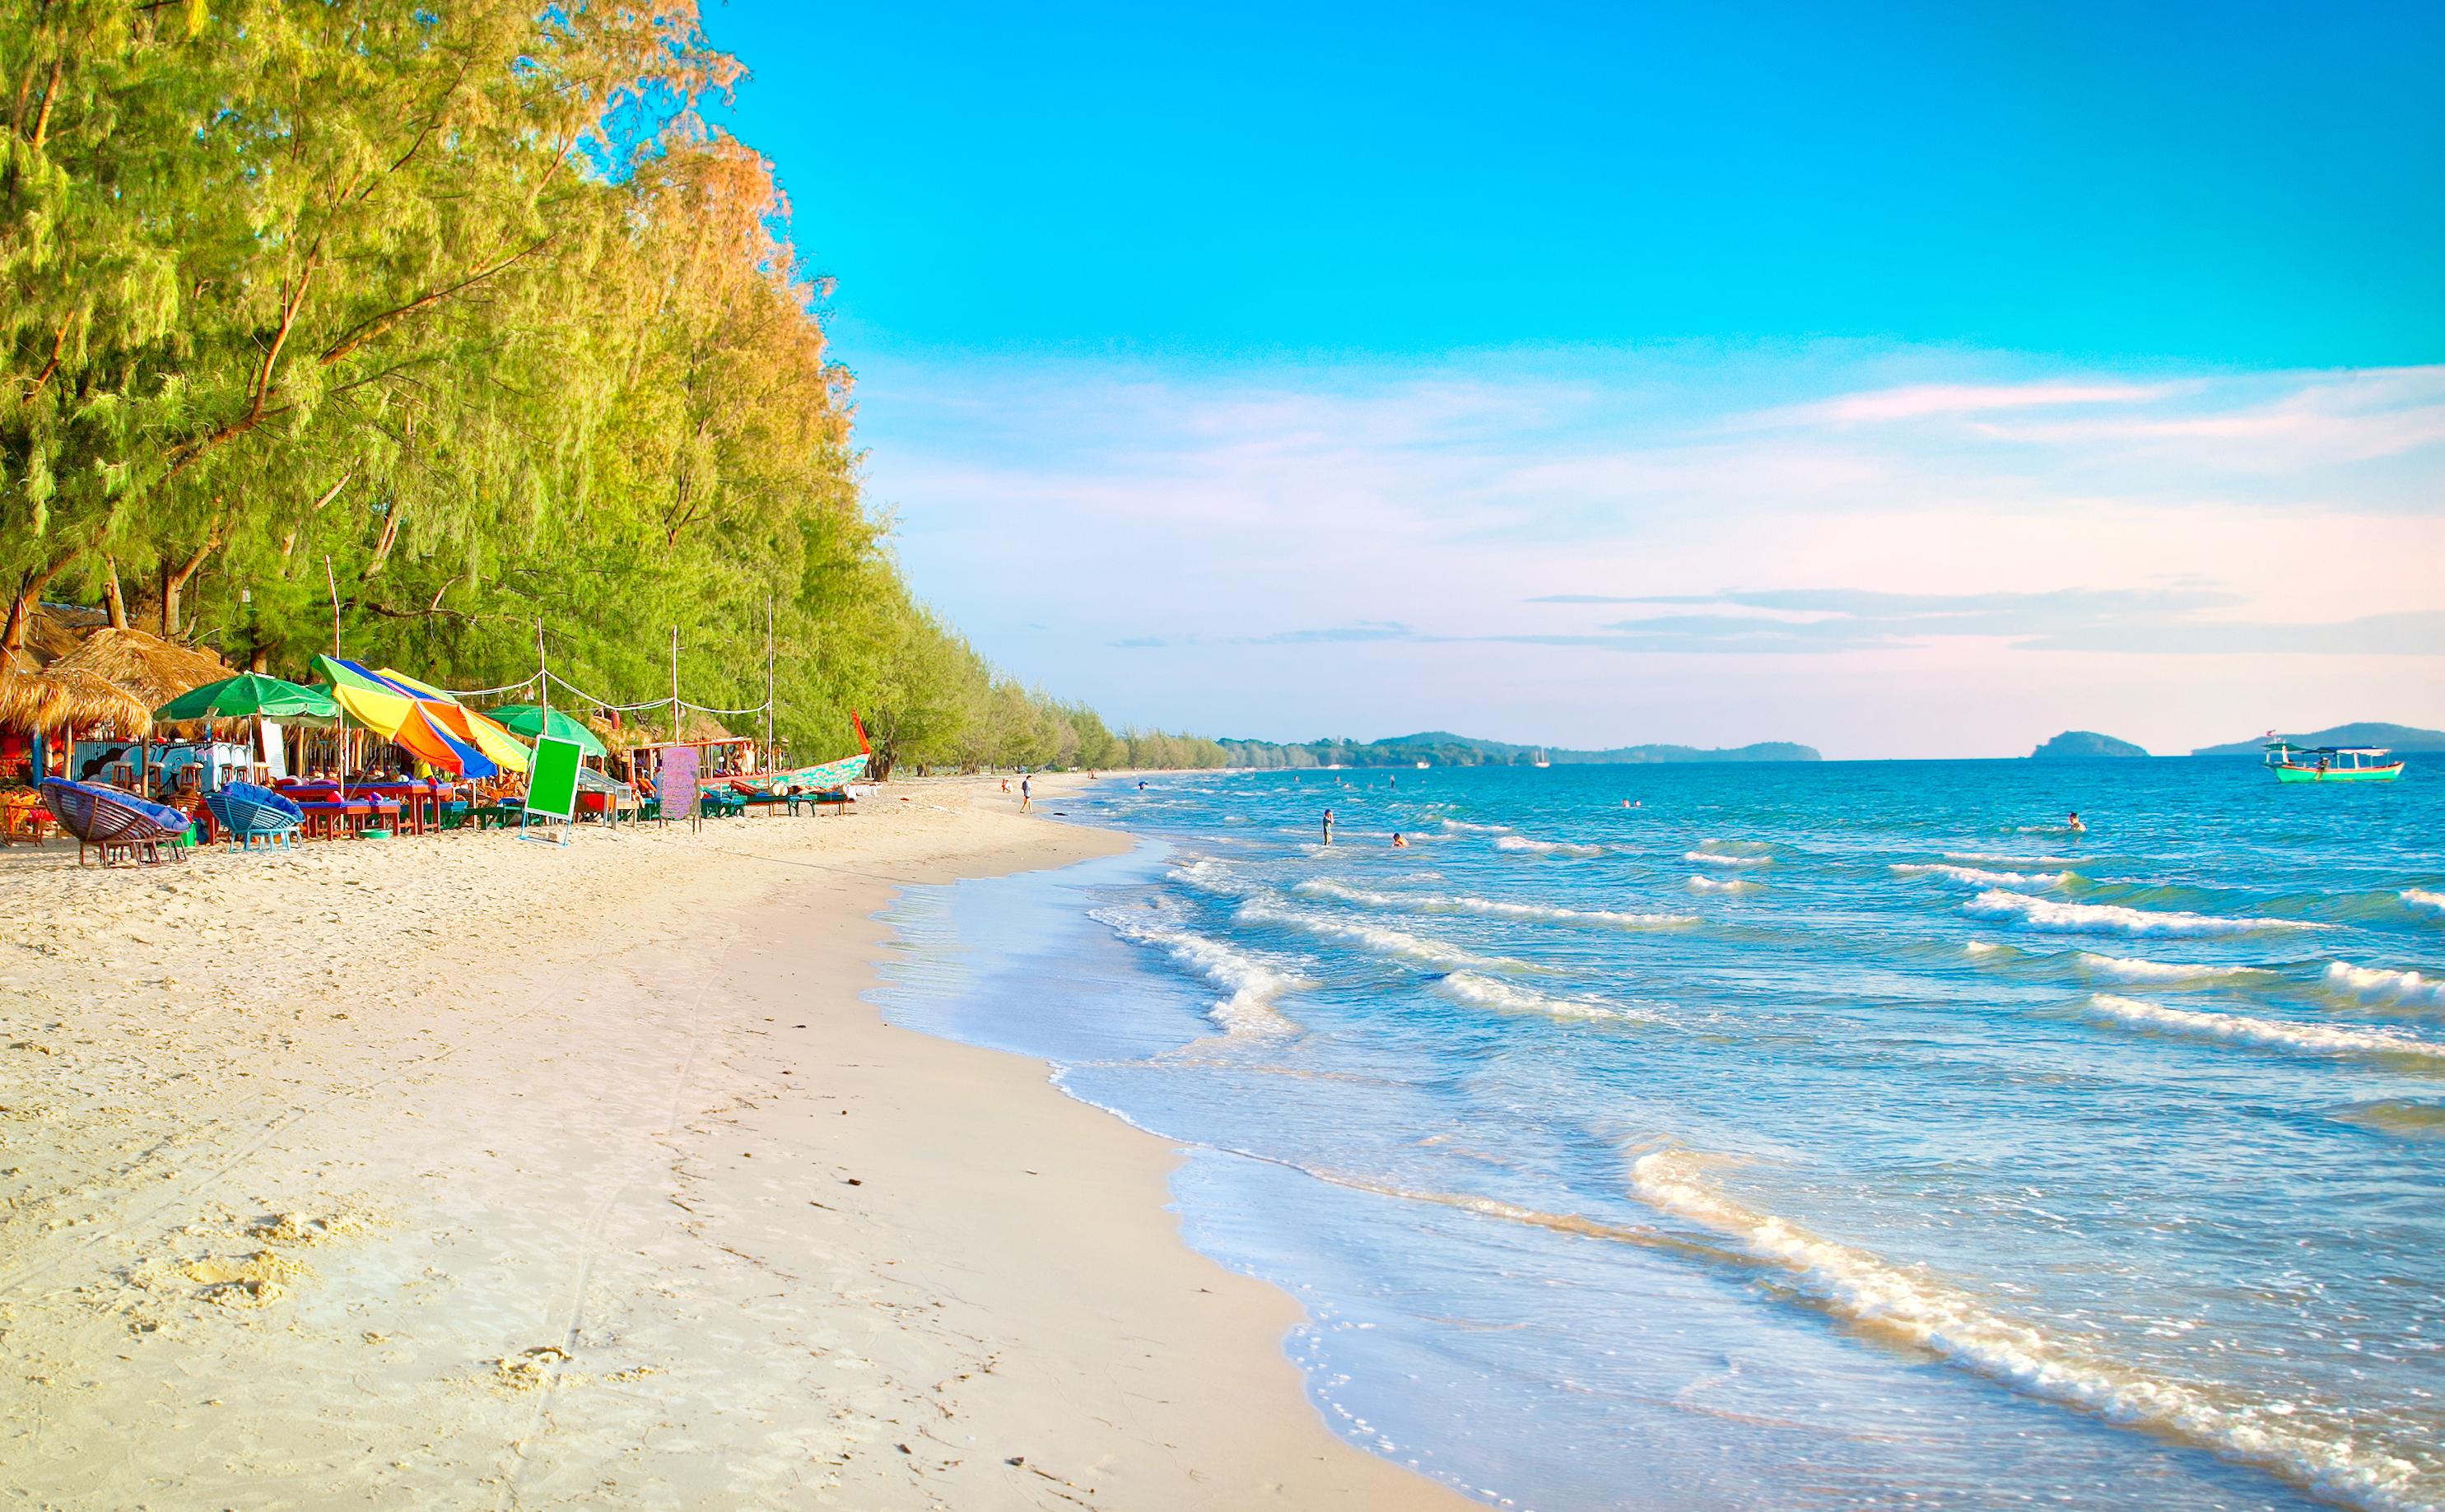 Cambodia beach vacation